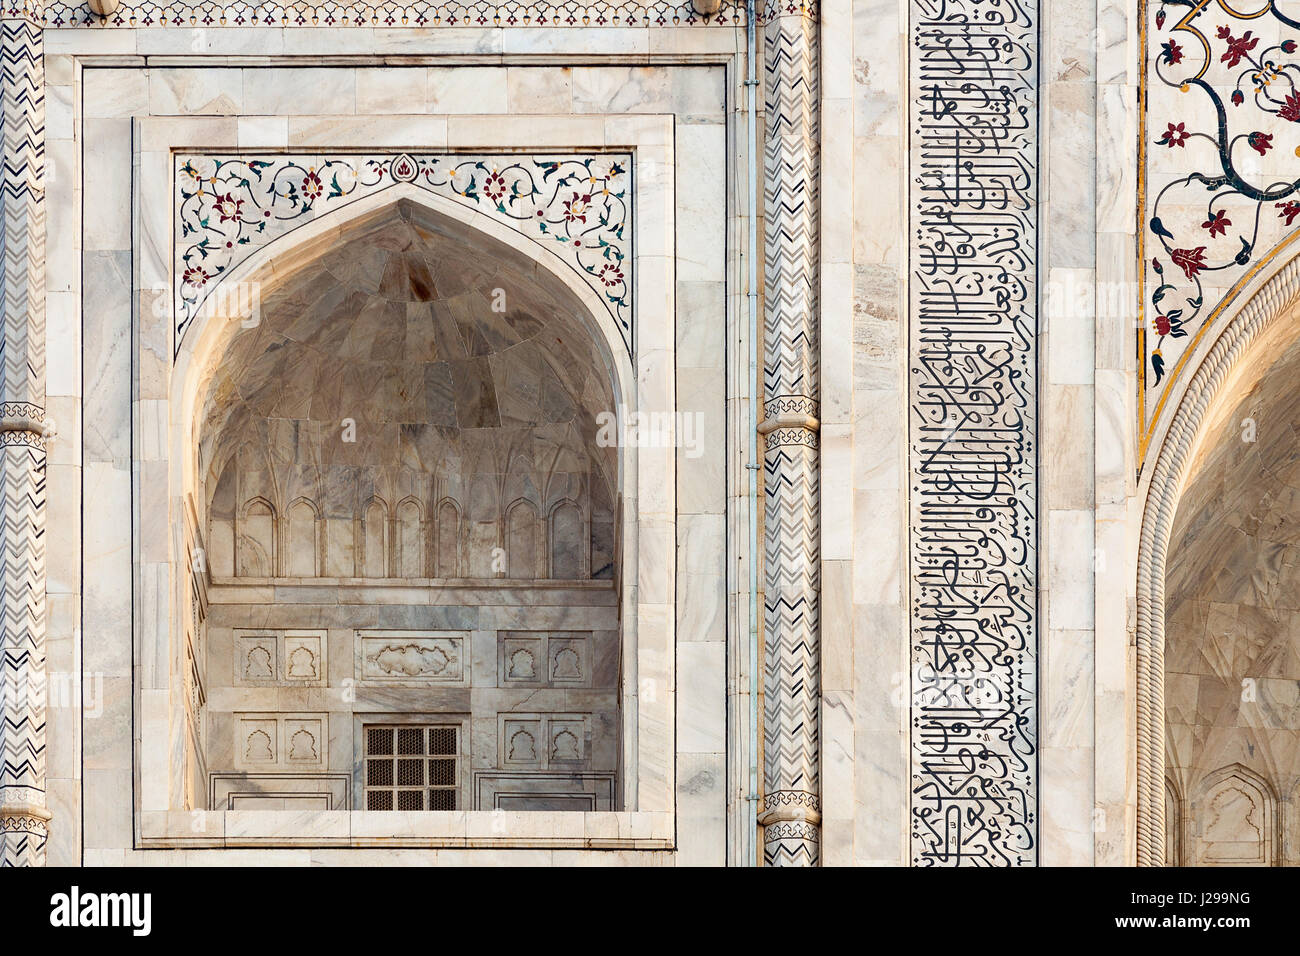 2016 Agre India. Il Taj Mahal, persiano per la corona di palazzi, è un bianco-avorio mausoleo di marmo costruito per celebrare l'amore. Foto Stock